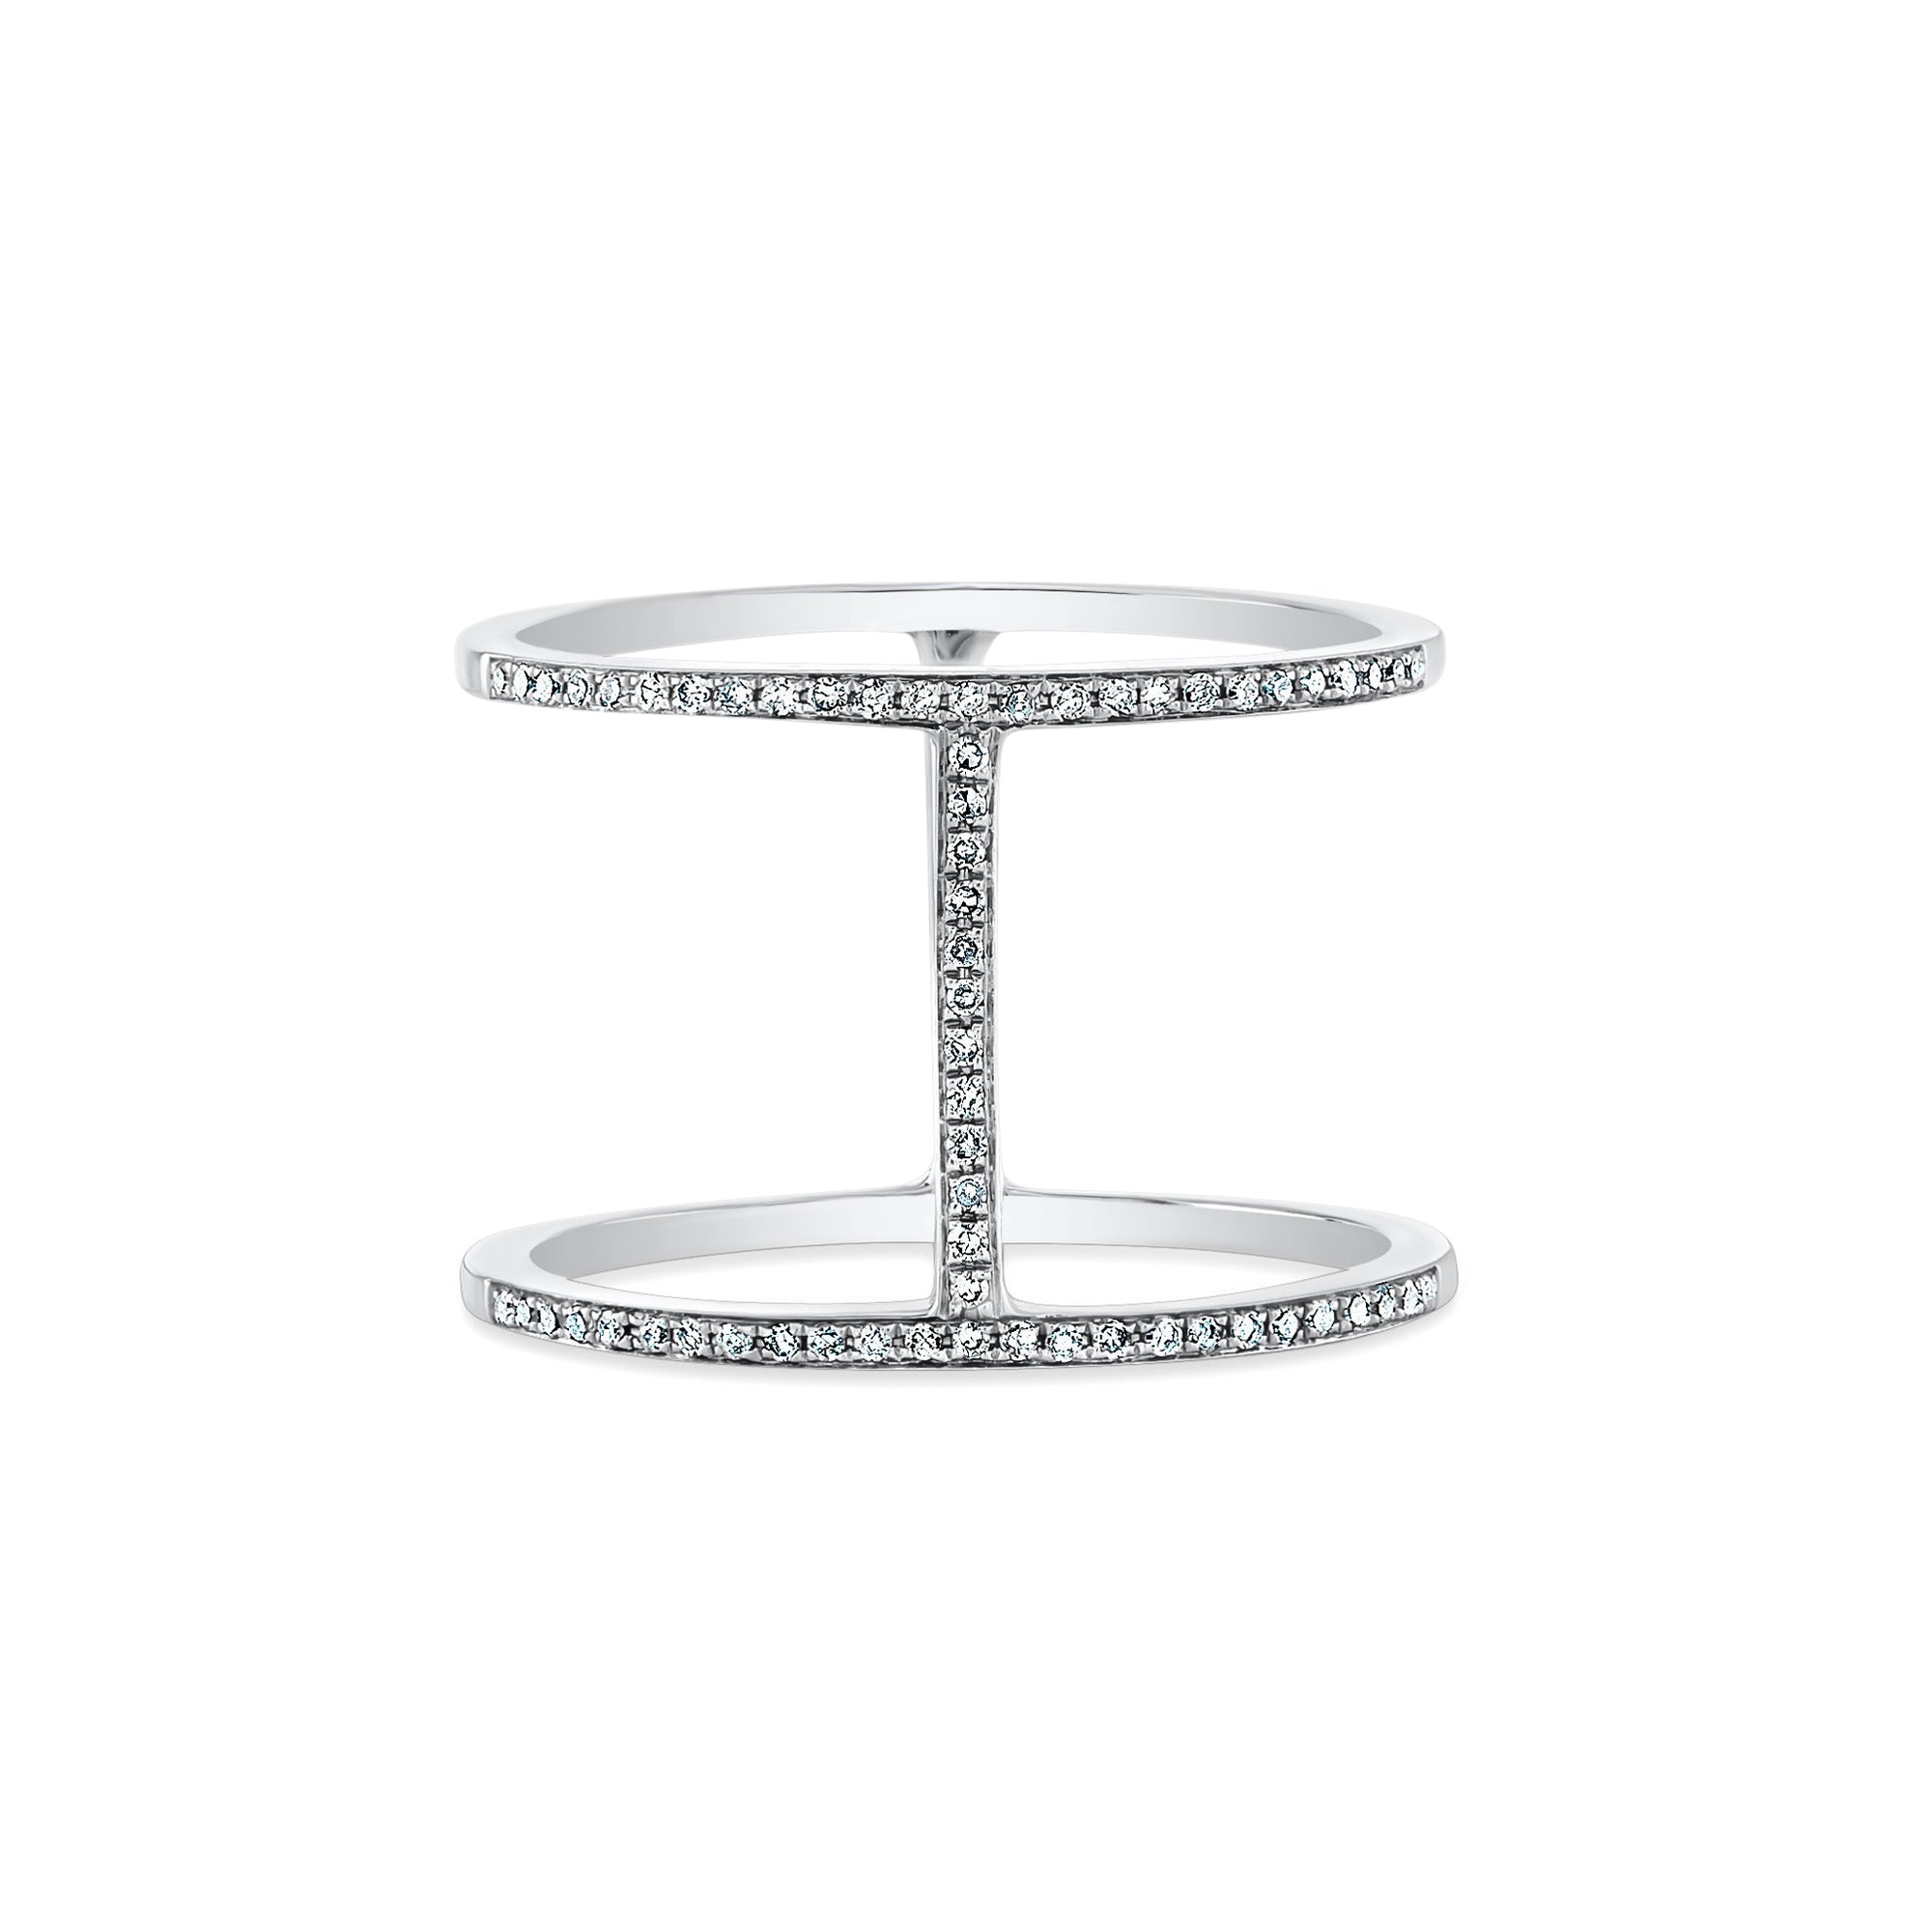 Diamond H Ring  - 14k gold weighing 2.71 grams.  - 62 round diamonds weighing 0.16 carats.